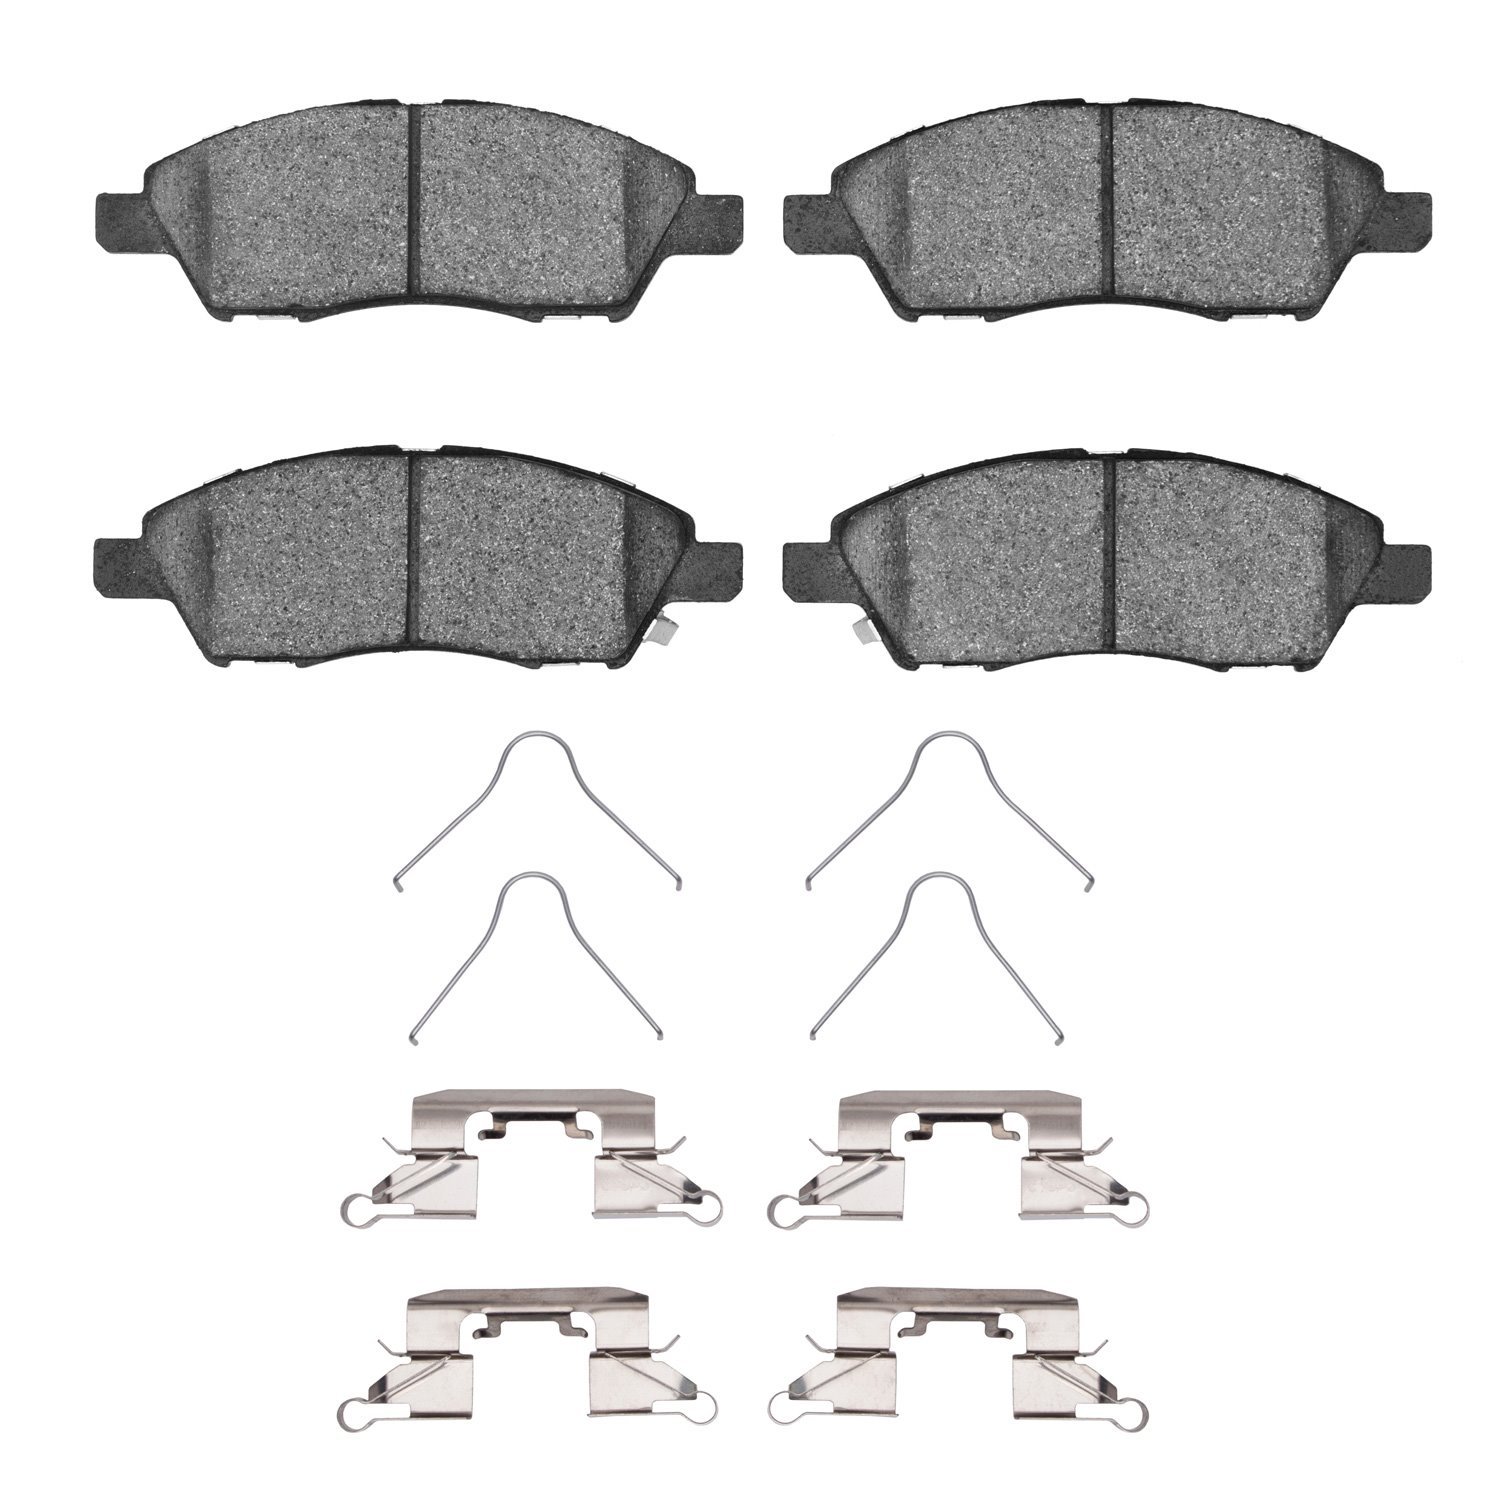 3000-Series Ceramic Brake Pads & Hardware Kit, 2011-2019